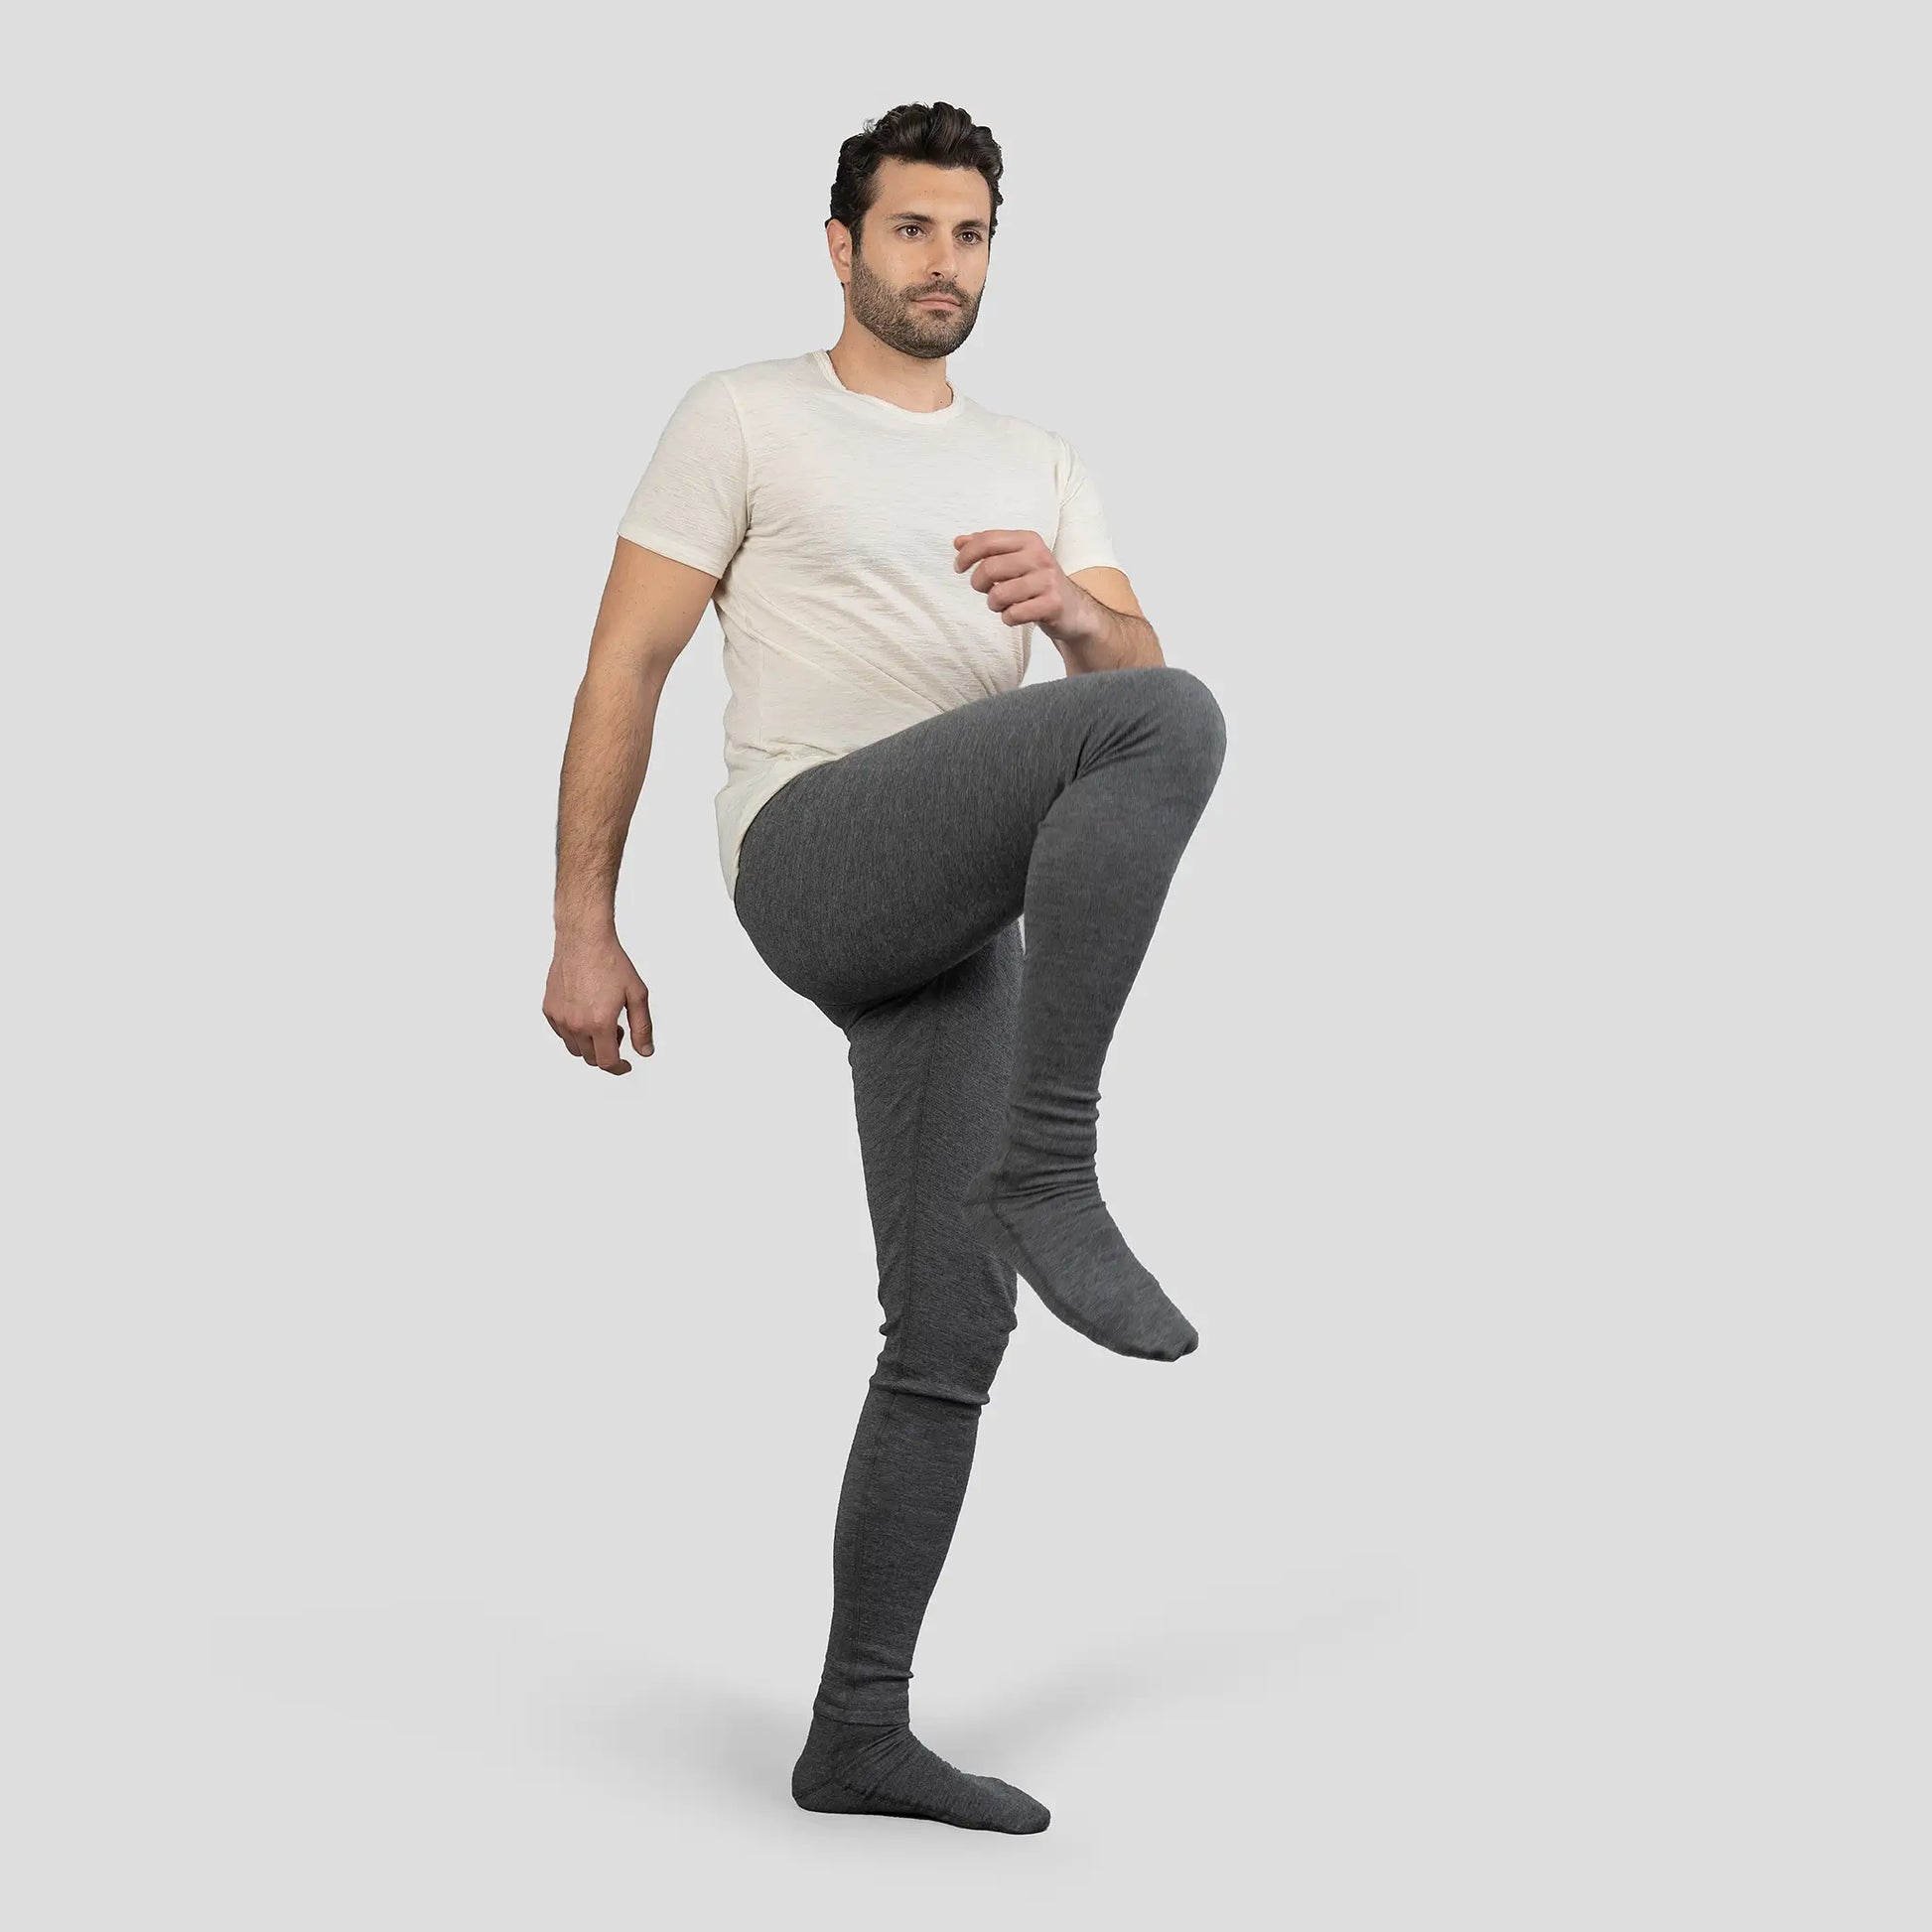 mens best lightweight leggings lightweight color gray